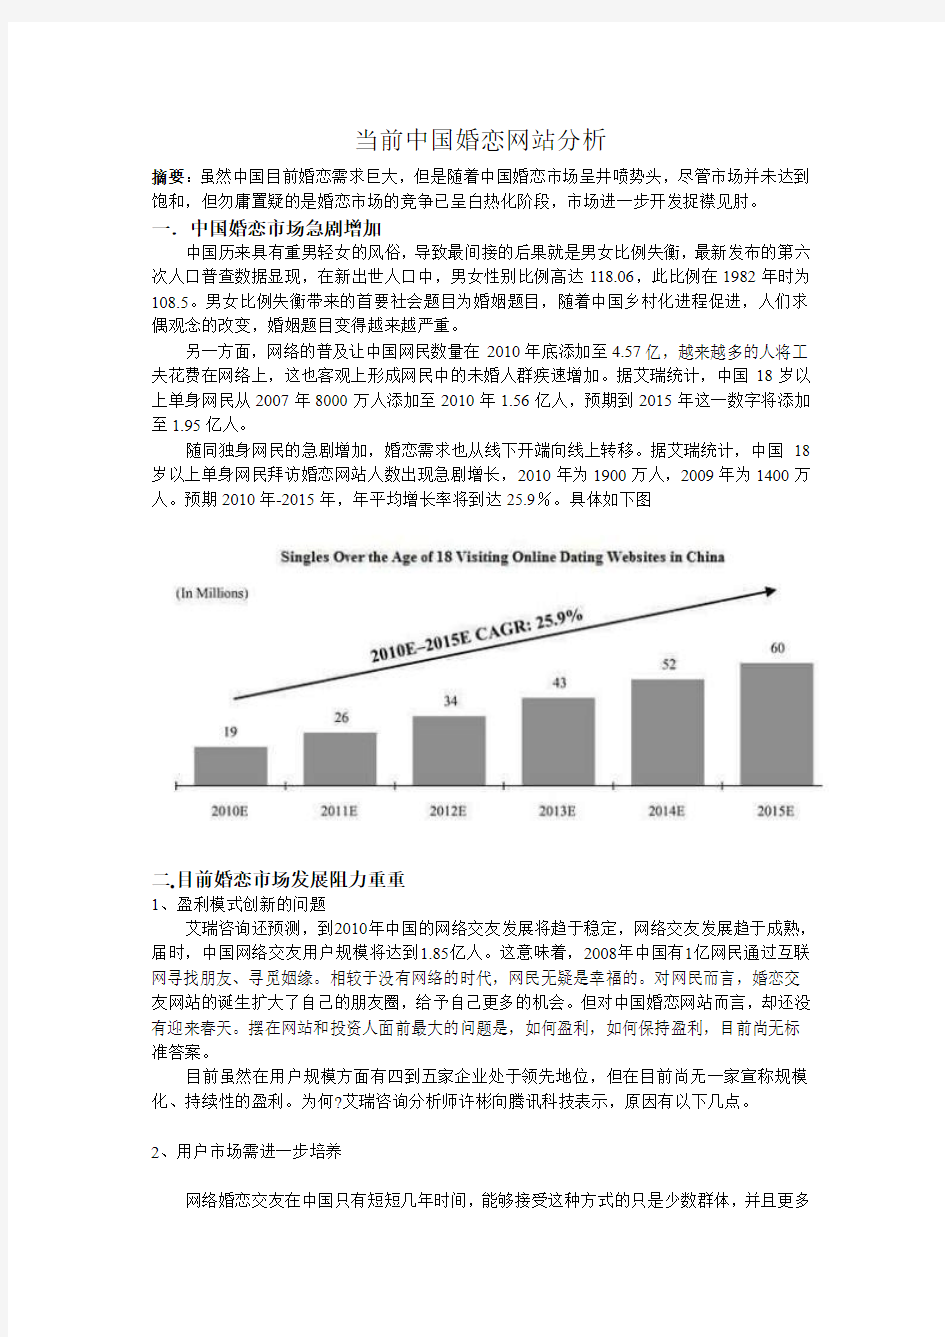 当前中国婚恋网站市场现状与前景分析报告